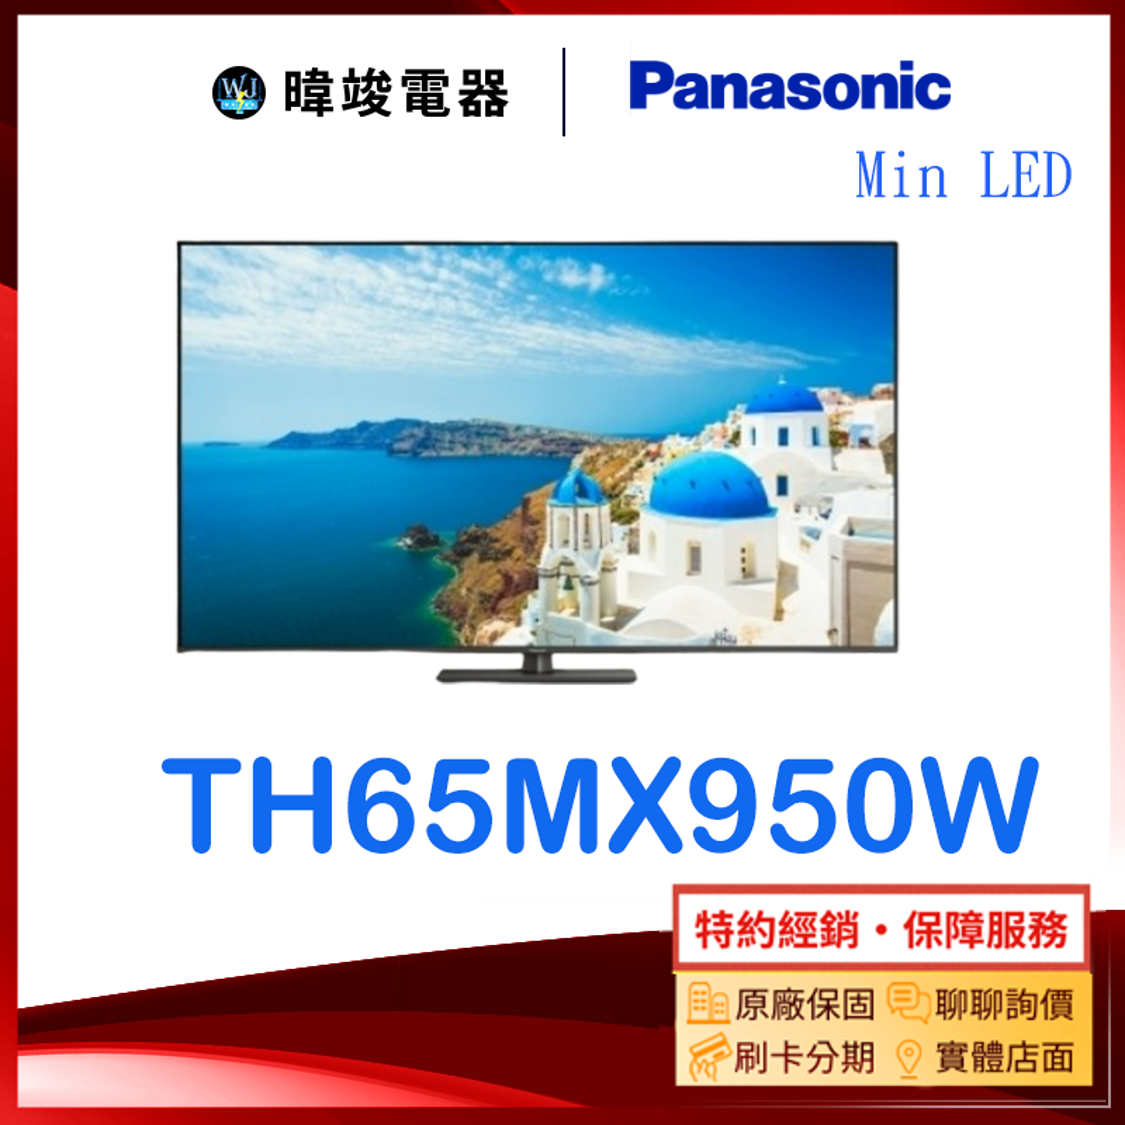 【原廠保固】Panasonic國際 TH65MX950W 65型 MiniLED電視 TH-65MX950W 4K電視